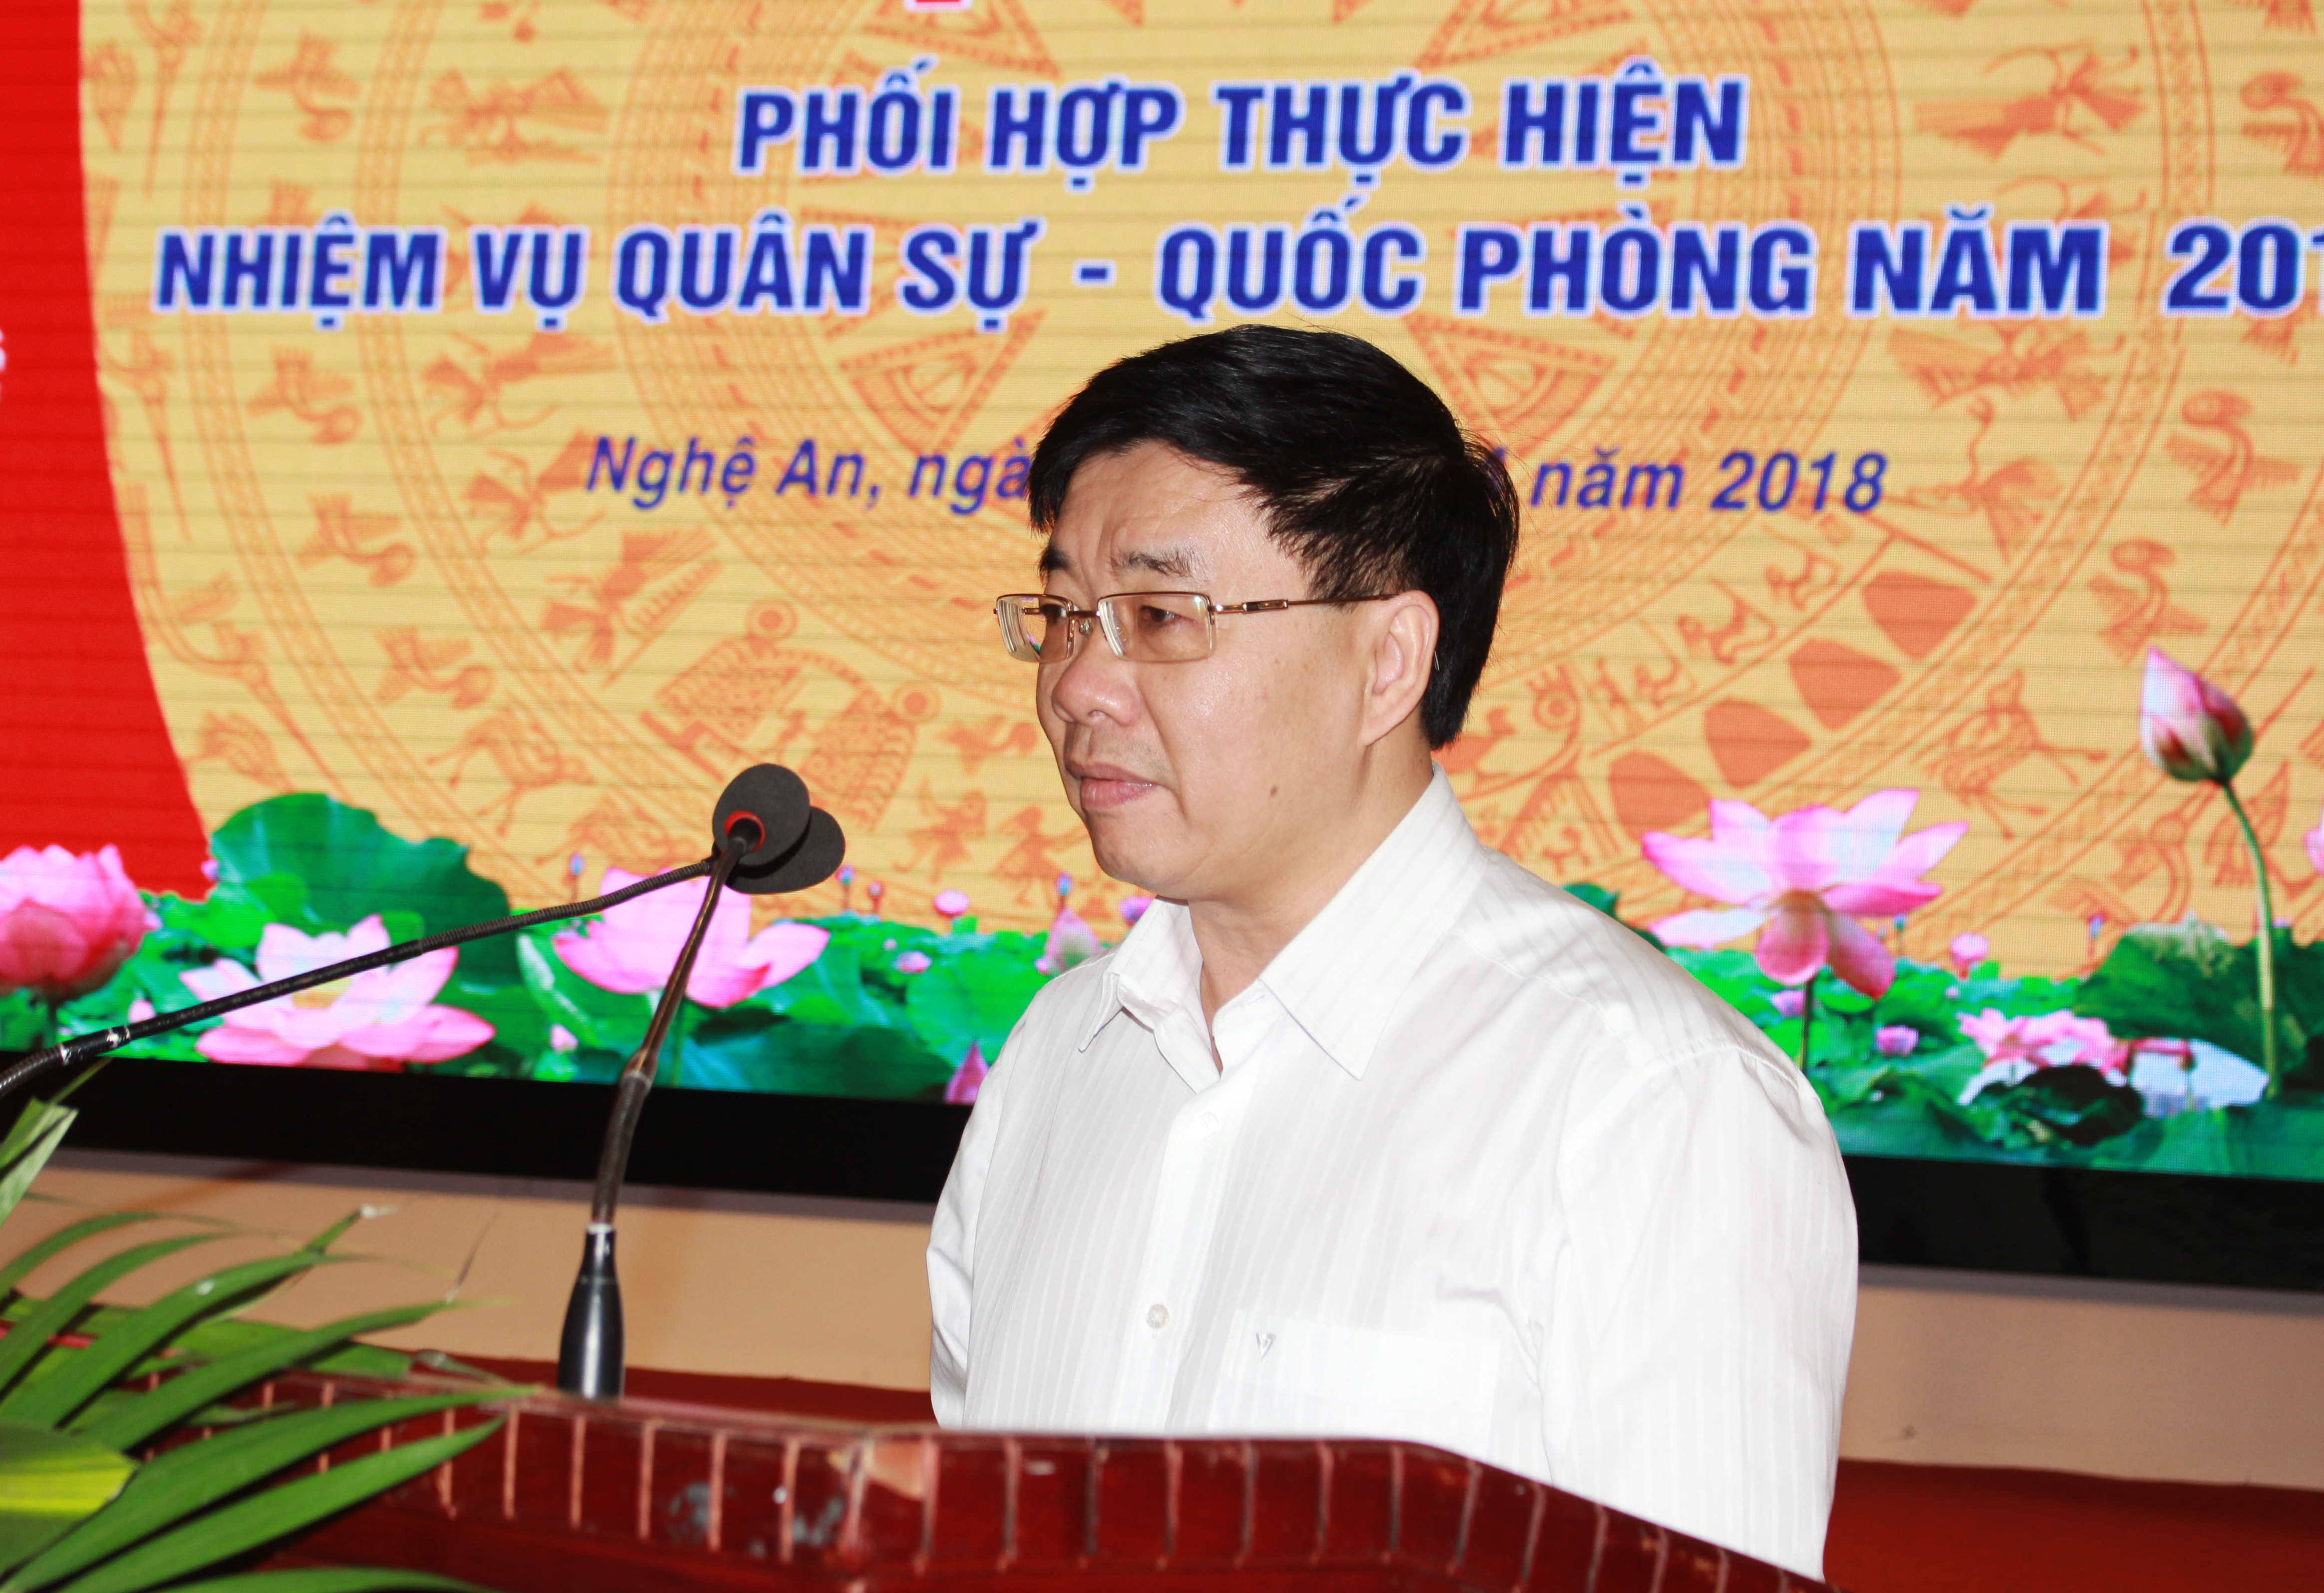 Đồng chí Nguyễn Văn Thông – Phó Bí tỉnh ủy Nghệ An phát biểu tại Hội nghị. Ảnh: Phương Thúy